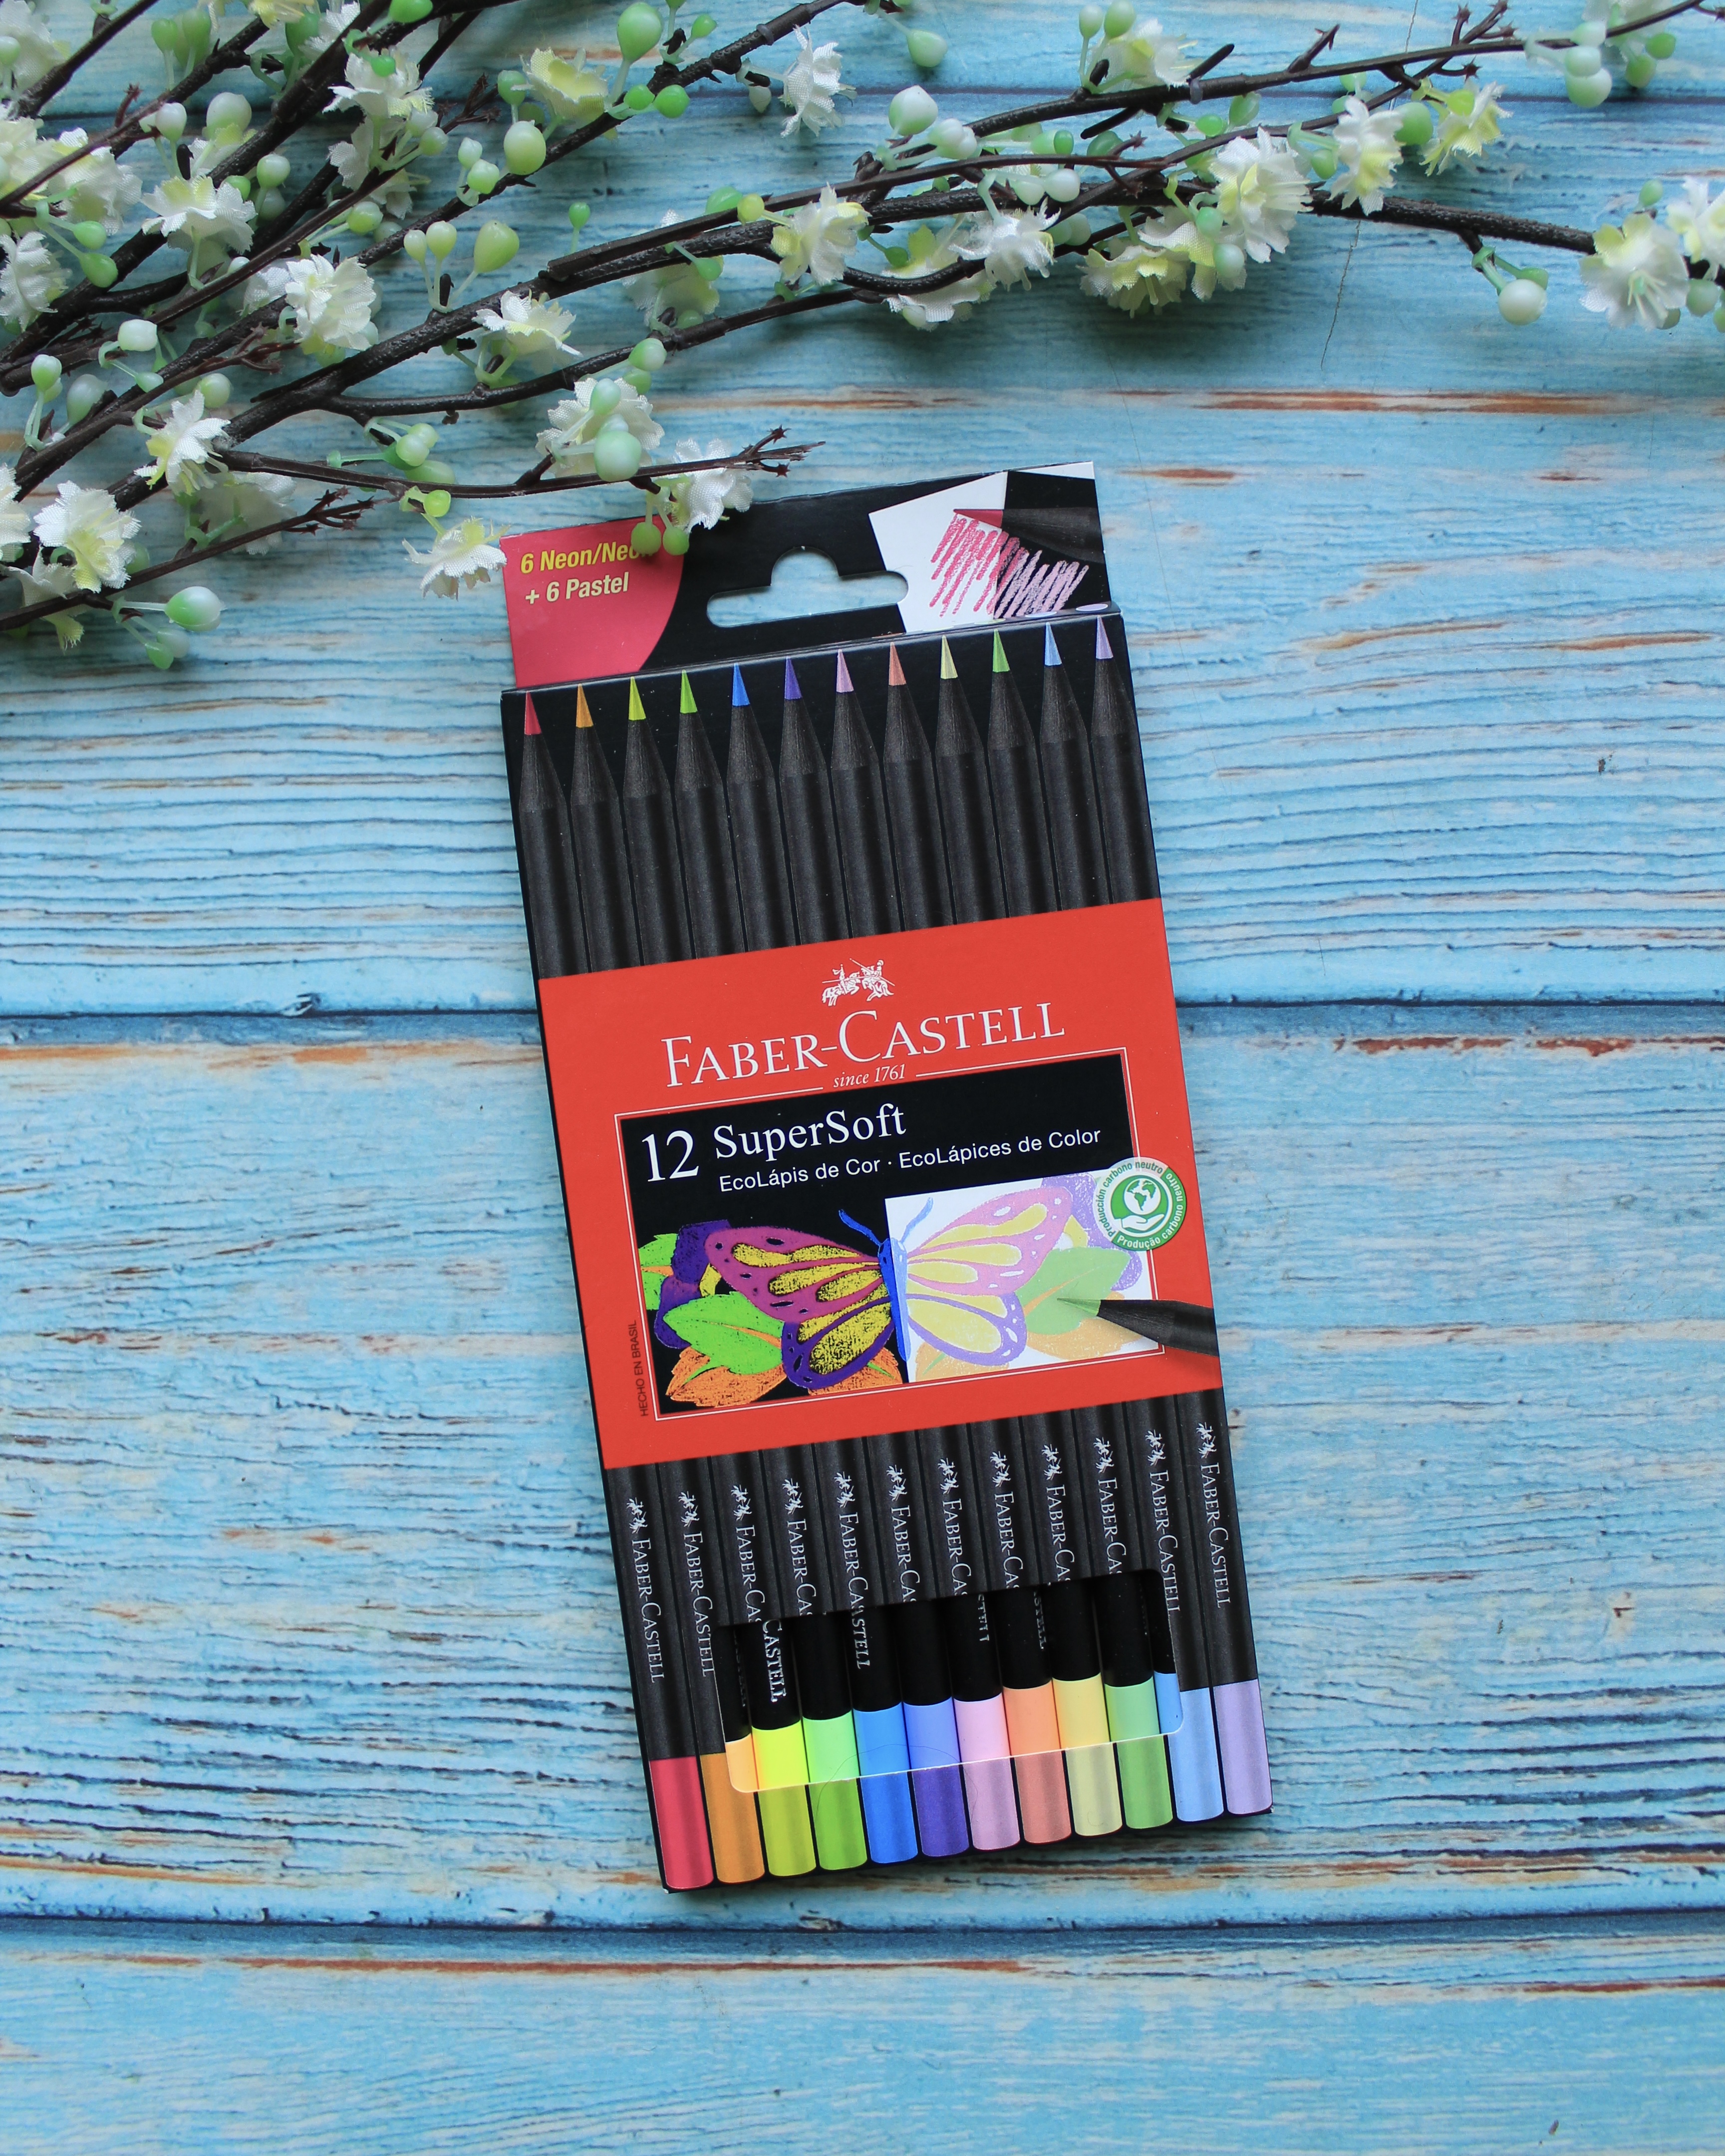 Faber-Castell Color Supersoft Pastel y Neon - set de 12 lápices de colores